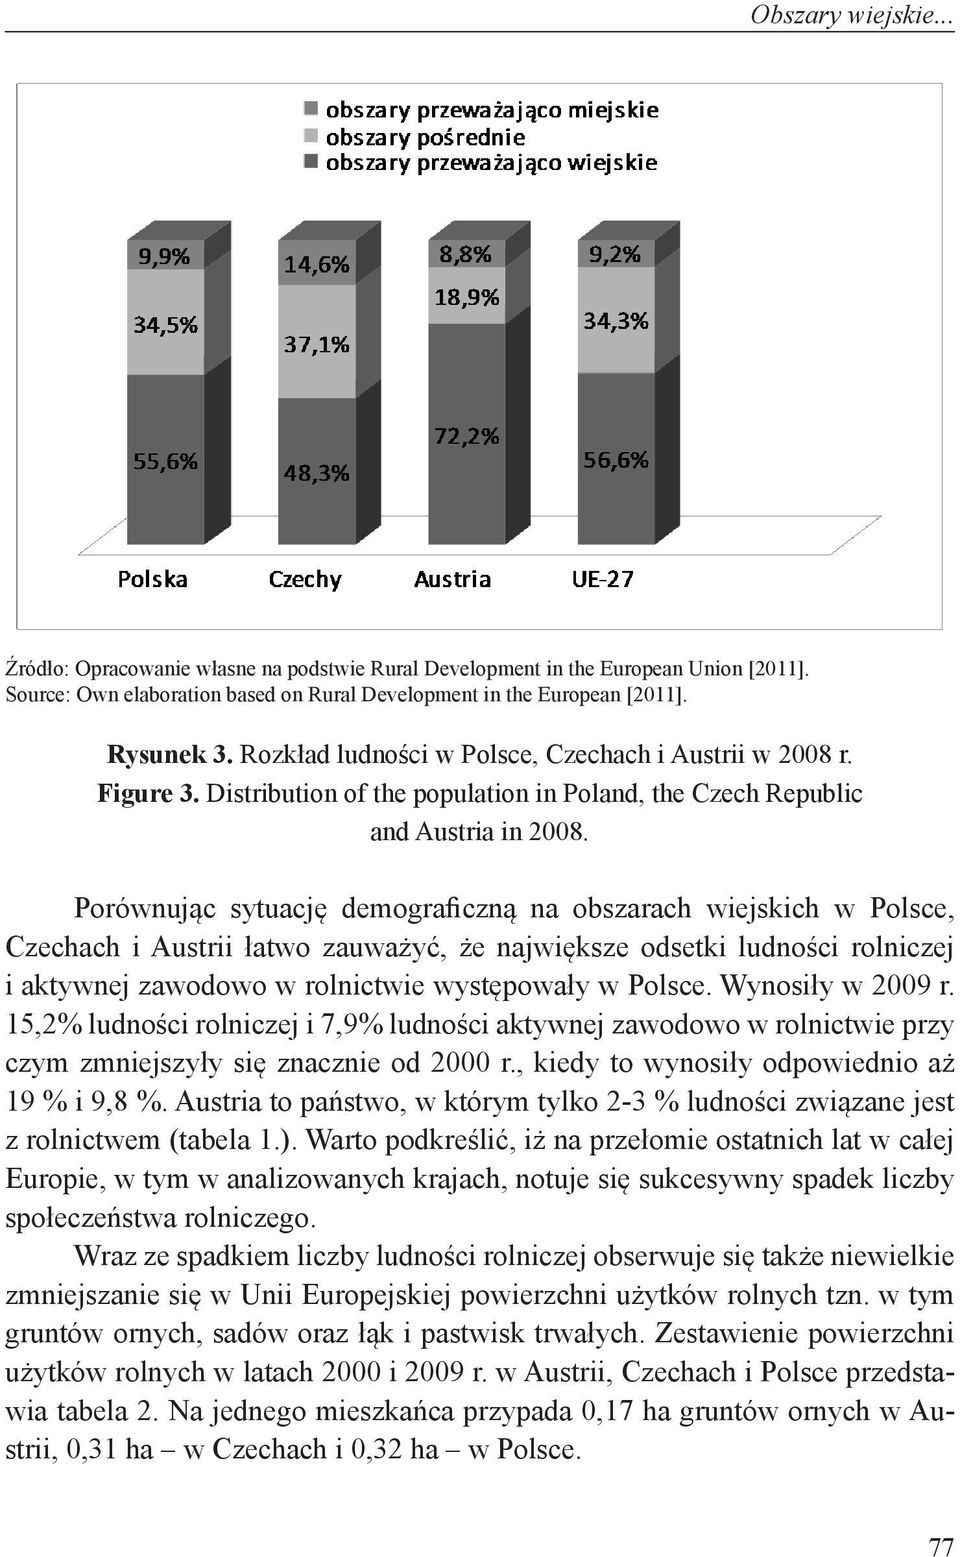 Porównując sytuację demograficzną na obszarach wiejskich w Polsce, Czechach i Austrii łatwo zauważyć, że największe odsetki ludności rolniczej i aktywnej zawodowo w rolnictwie występowały w Polsce.